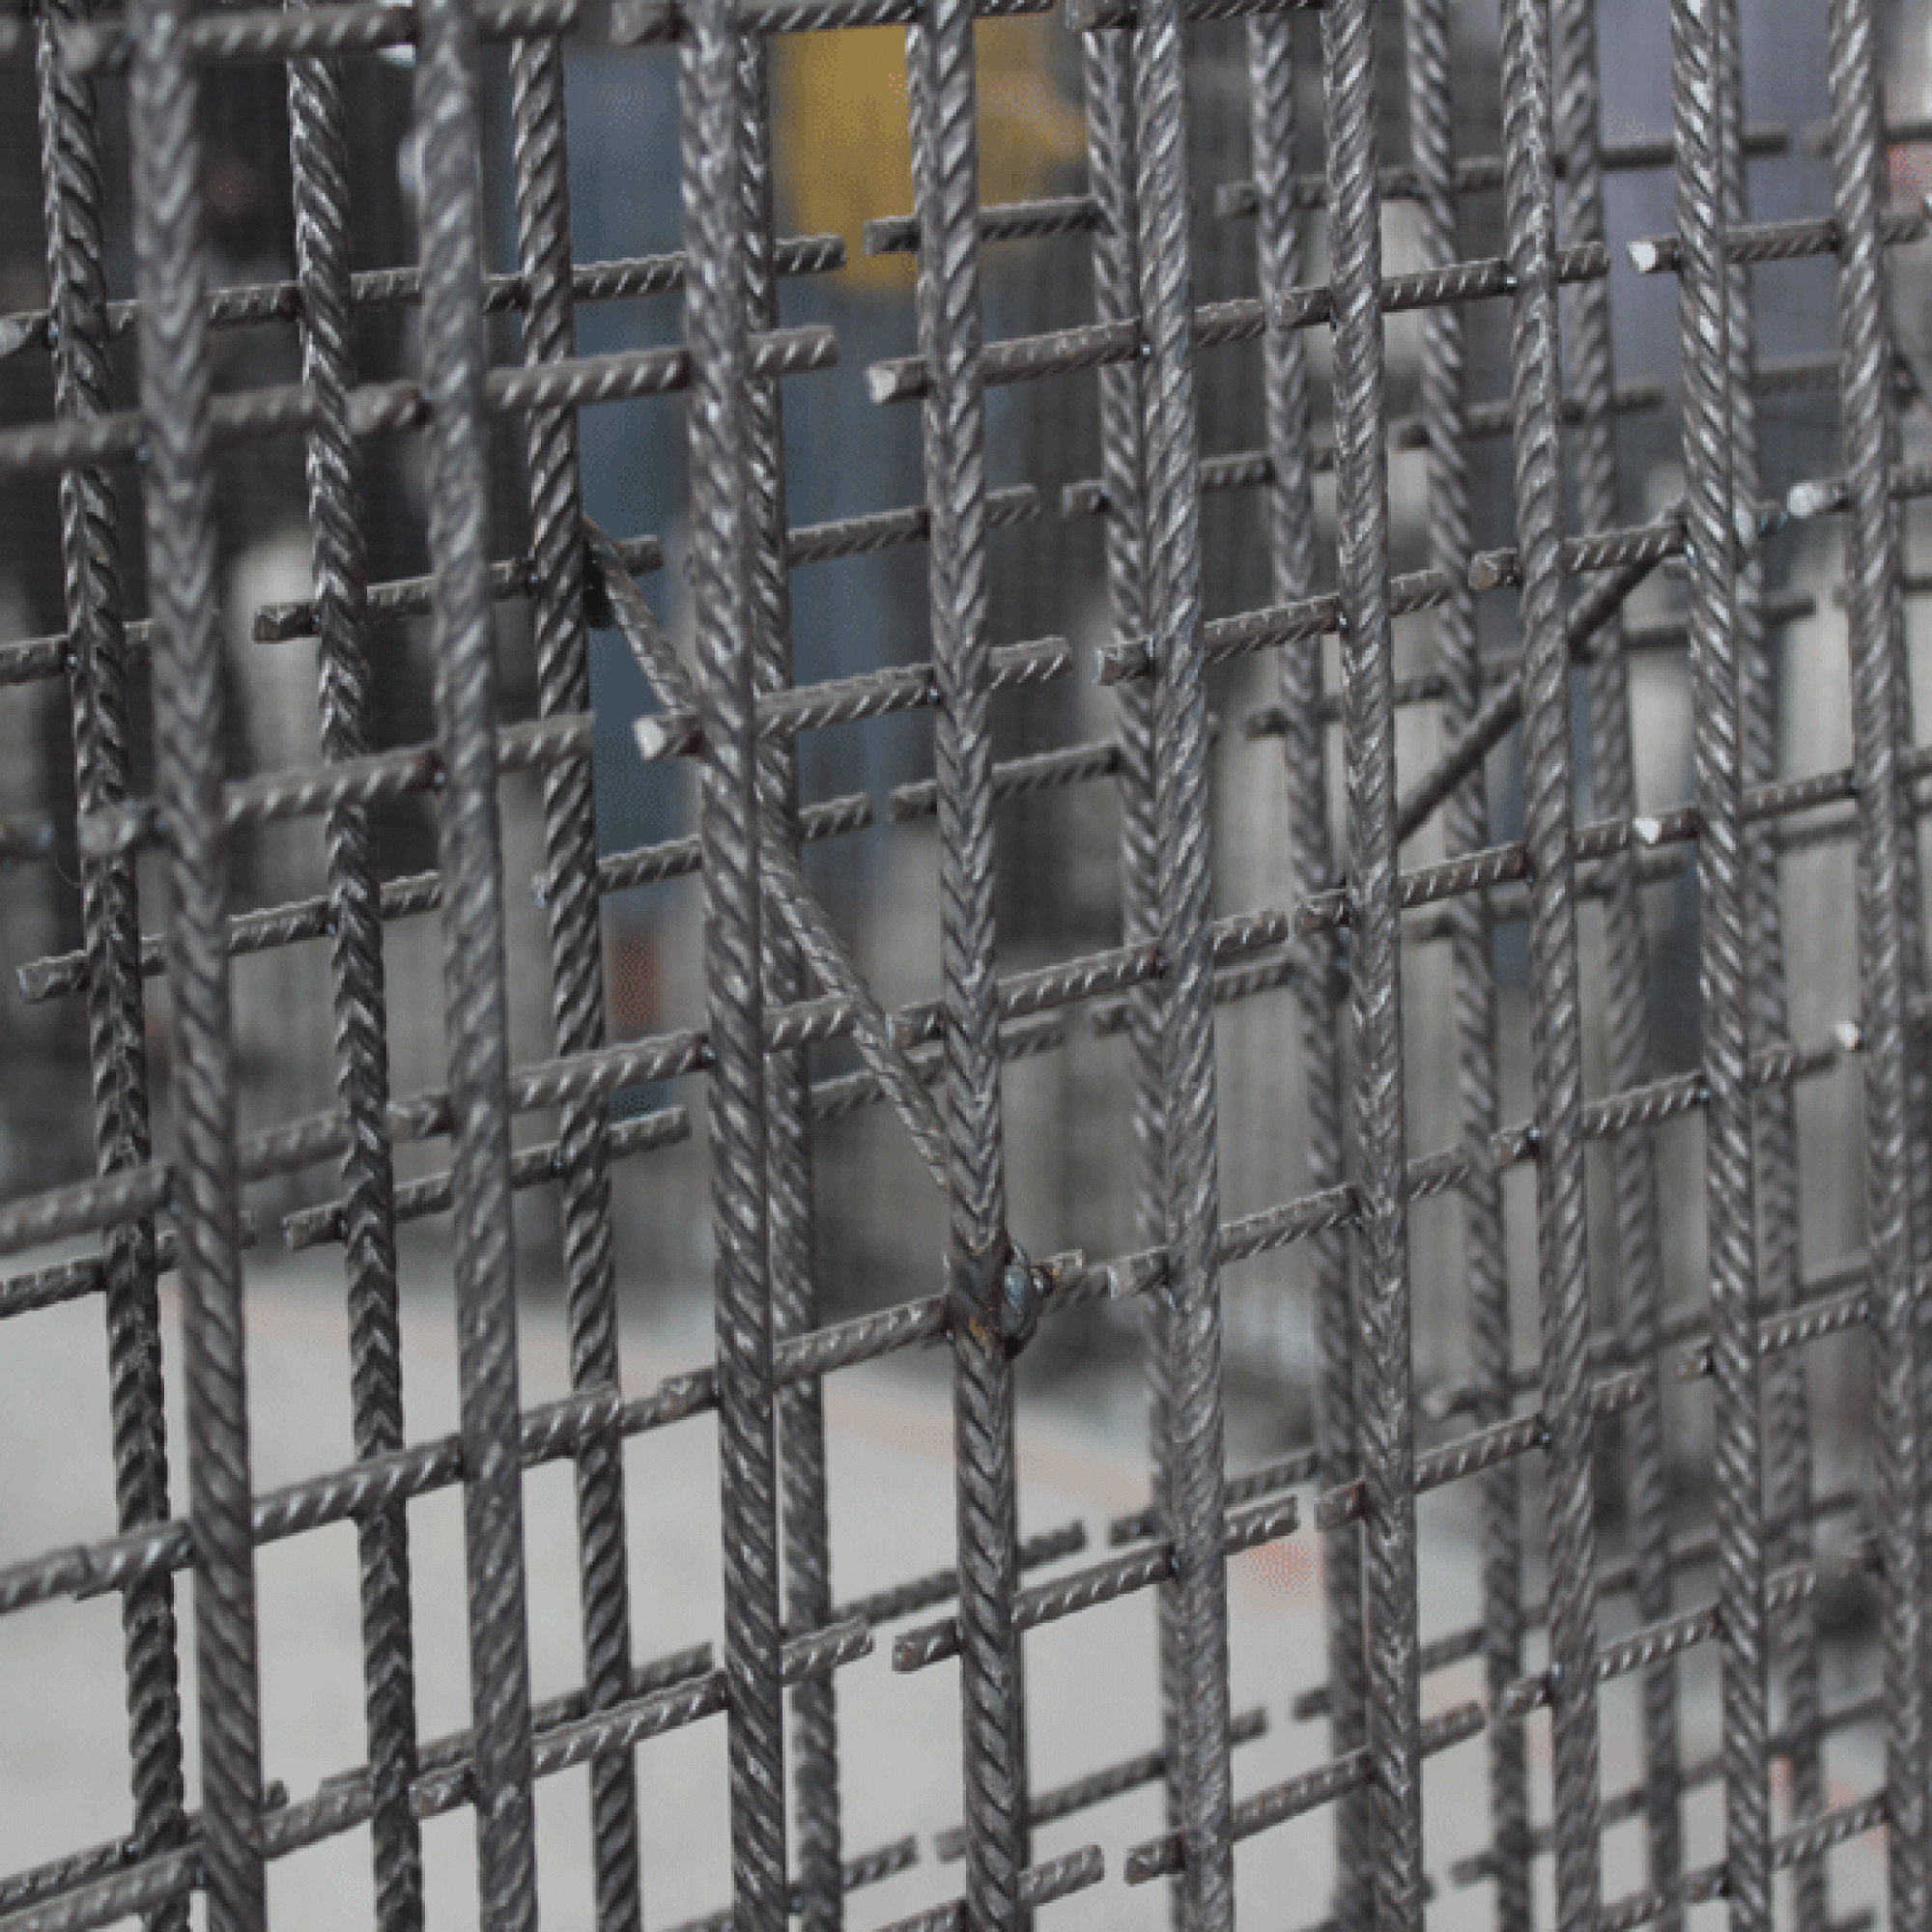 Die enge Struktur des Stahldrahtgitters verhindert das Auslaufen des Betons.